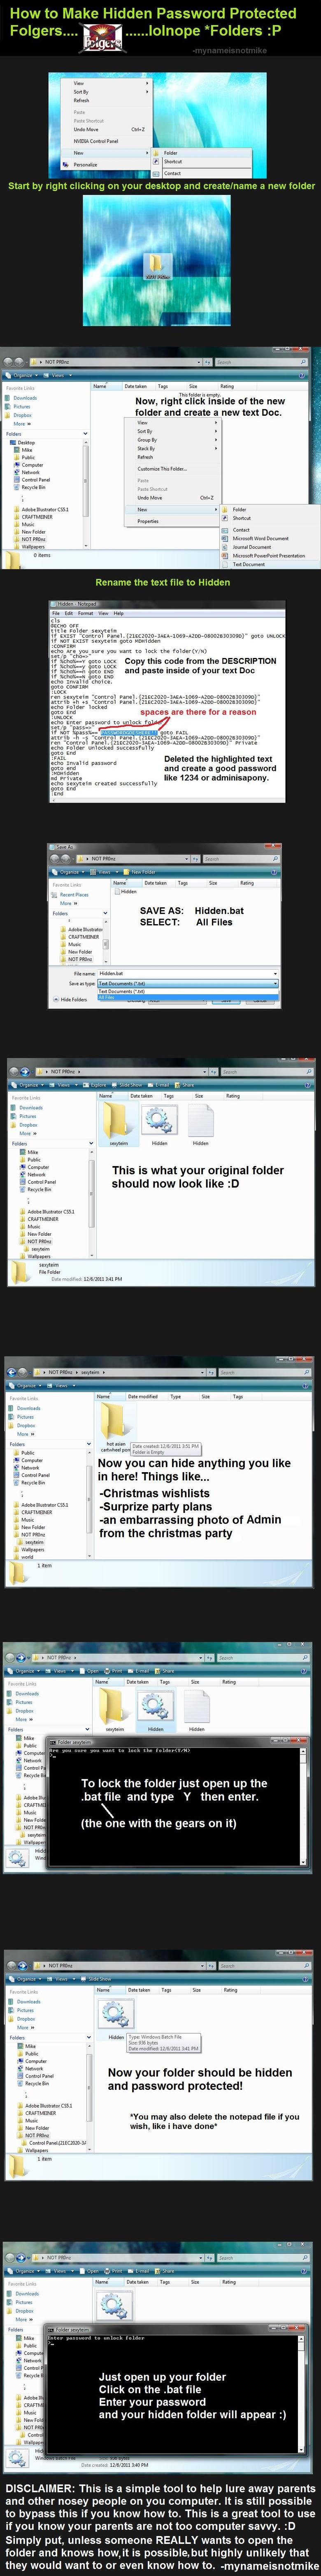 Hidden Folders: How to! (code fixed). cls @ECHO OFF title Folder sexyteim if EXIST &quot;Control Panel.{21EC2020-3AEA-1069-A2DD-08002B30309D}&quot; goto UNLOCK 